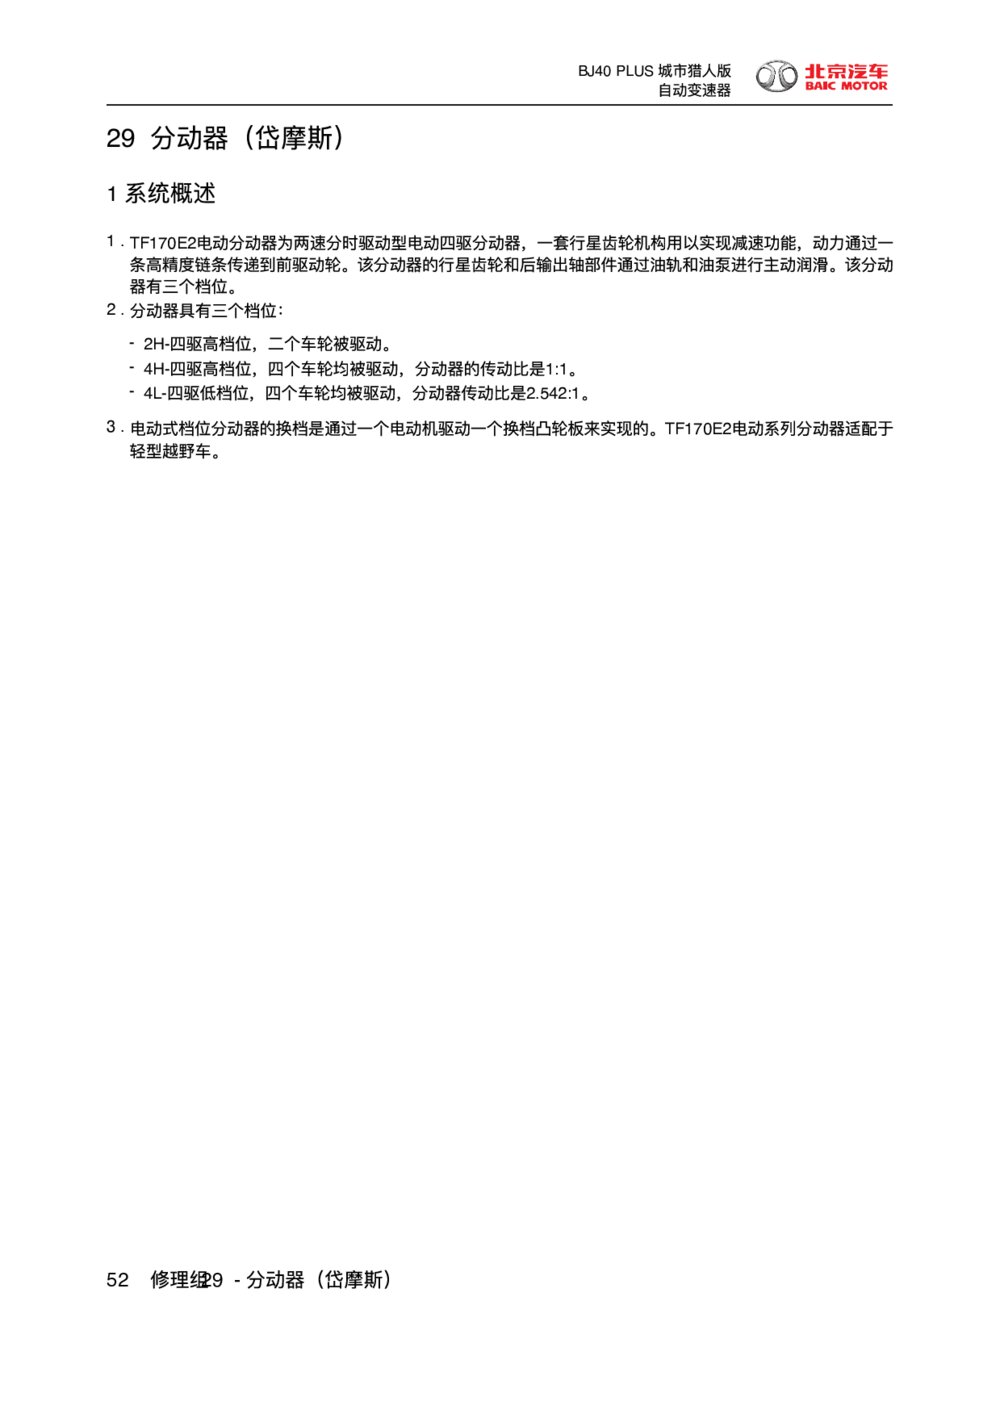 2018款北京BJ40 PLUS分动器（岱摩斯）维修手册1